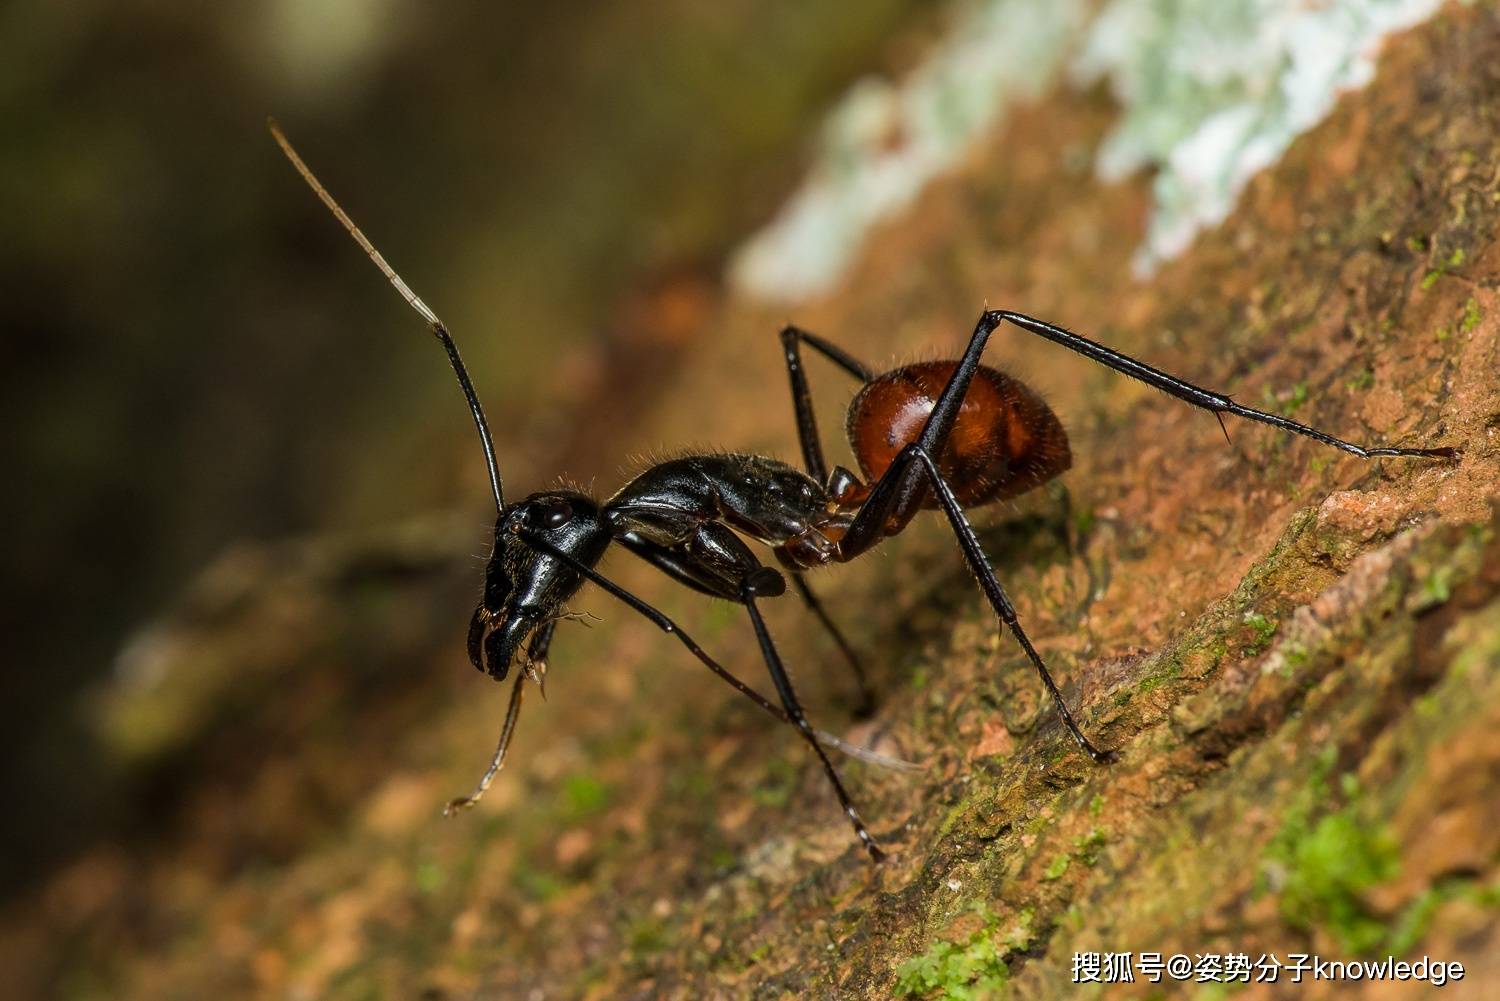 巨型蚂蚁食者 库存图片. 图片 包括有 毛茸, 纵向, 哺乳动物, 敲打, 投反对票, 本质, 灰色, 异乎寻常 - 65712775